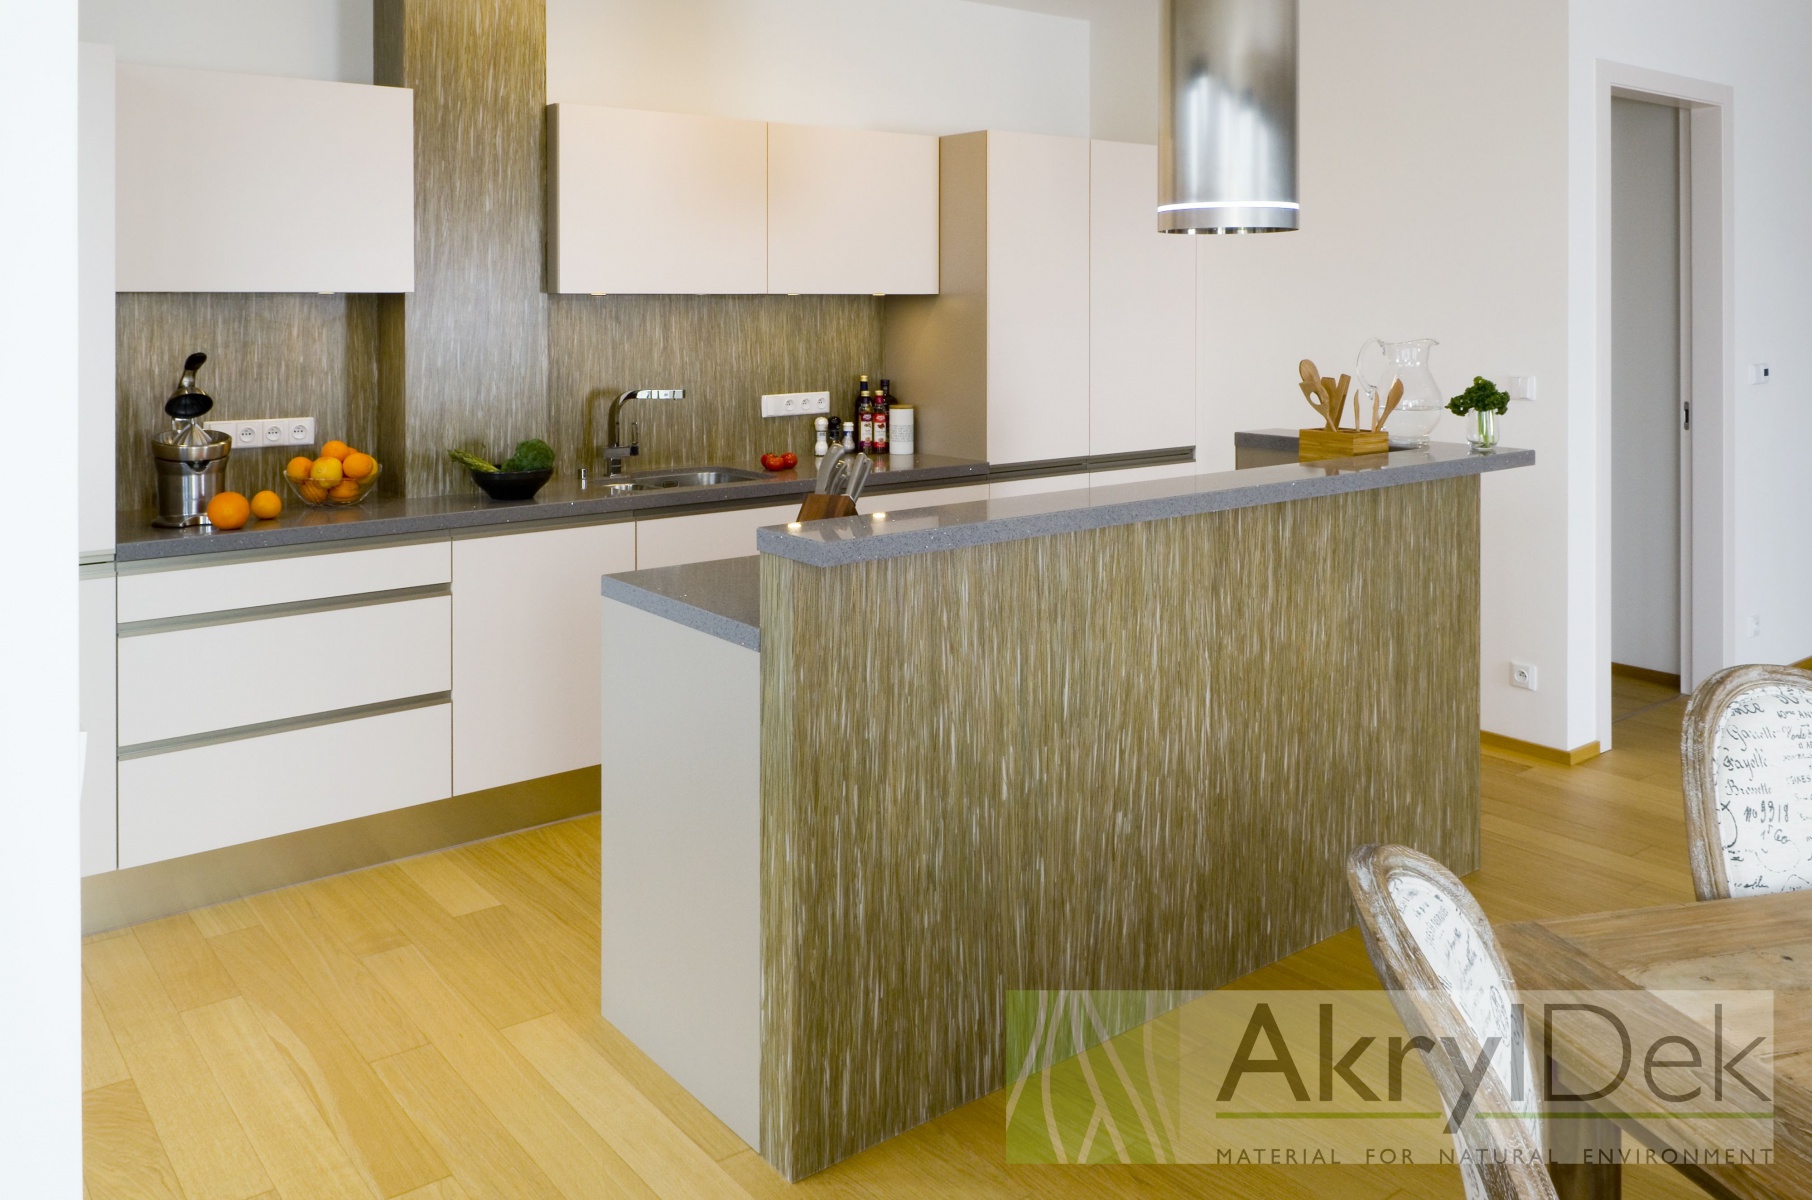 Kuchyně v přírodním stylu - AkrylDek s.r.o.